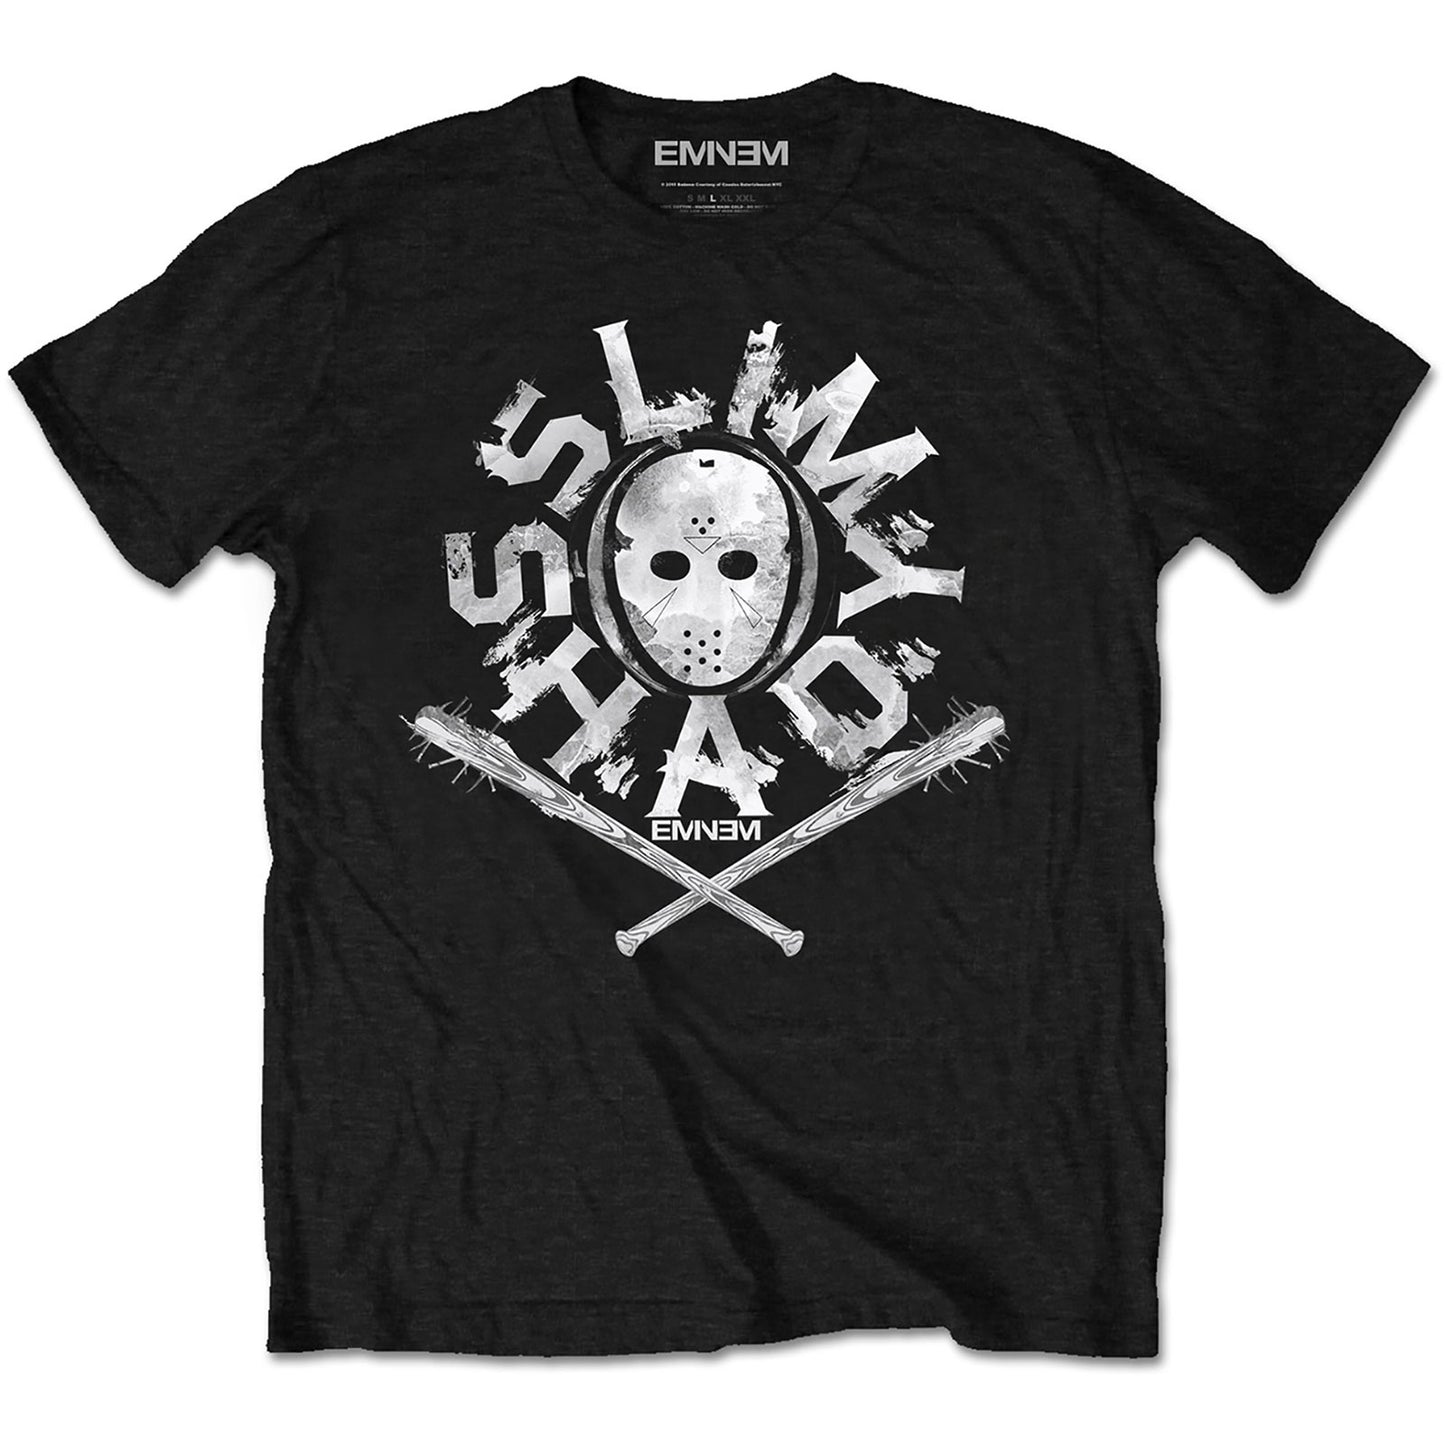 EMINEM - Shady Mask T-Shirt